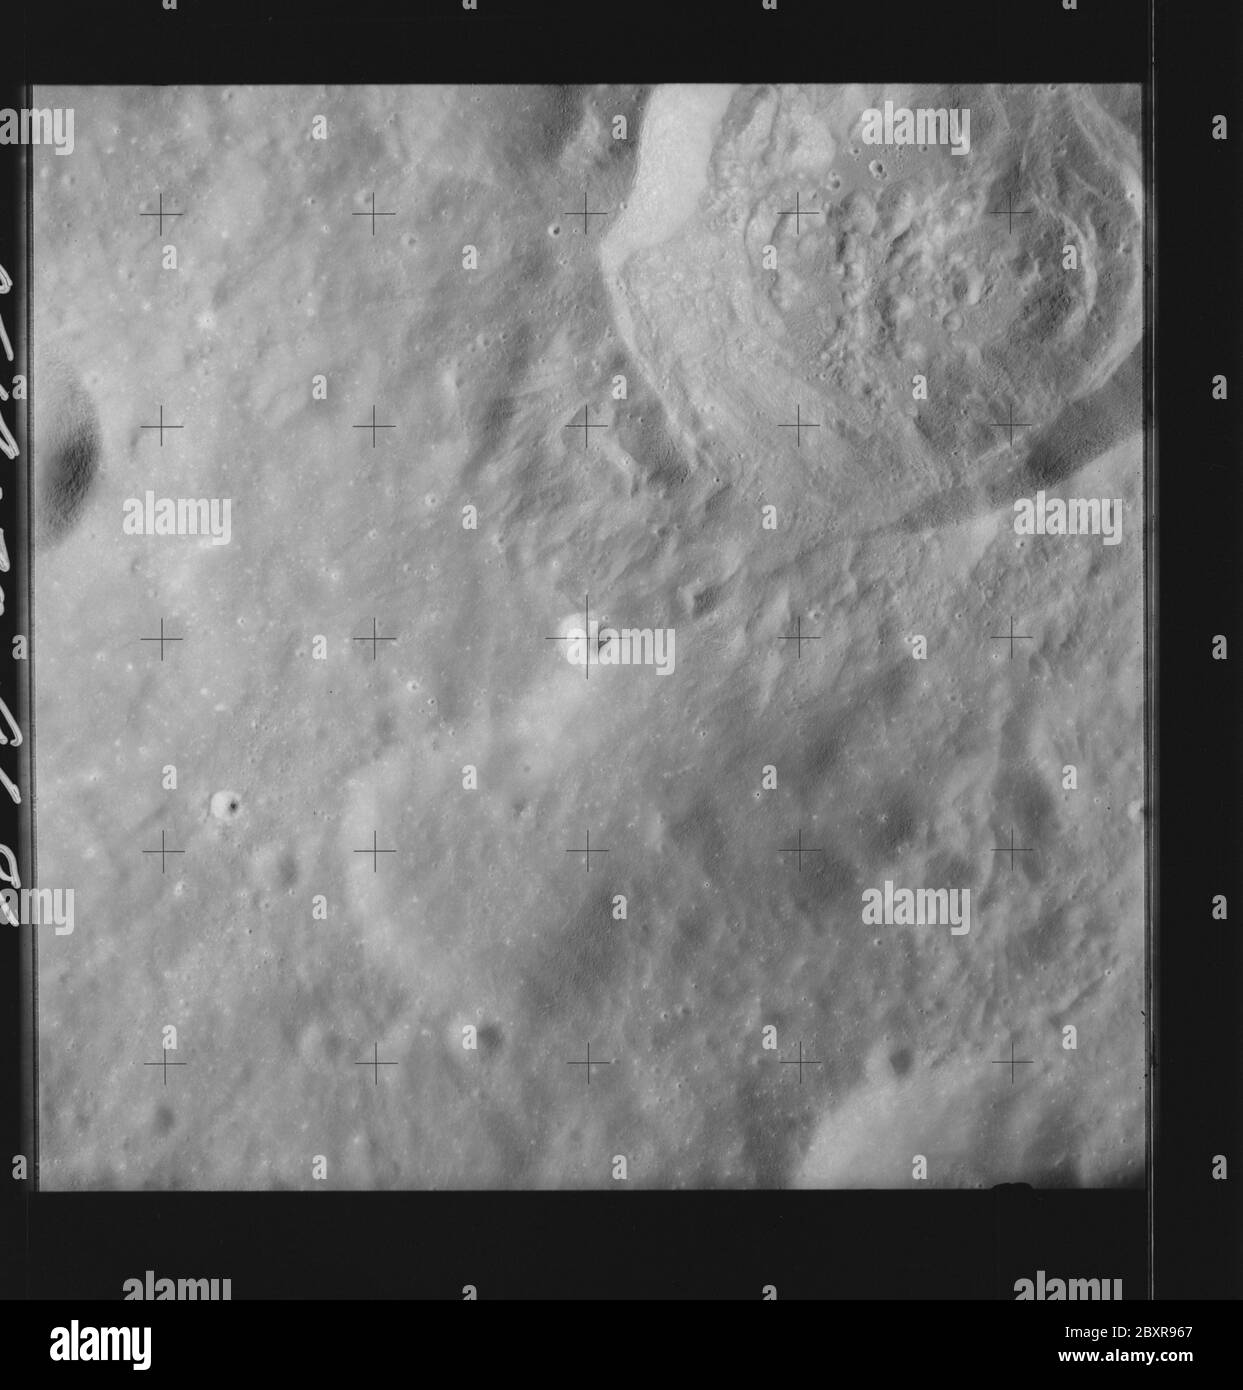 AS14-70-9686 - Apollo 14 - Apollo 14 image de la mission - vue de la surface lunaire sur le bord nord-est du cratère Pasteur.; portée et contenu: La base de données originale décrit ceci comme: Description: Vue de la surface lunaire sur le bord nord-est du cratère Pasteur. Des images ont été prises sur la Révolution 26 de la mission Apollo 14. Le magazine original a été étiqueté Q, le type de film était 3400BW (Panatomic-X, noir et blanc), objectif de 80 mm avec une élévation du soleil de 30 degrés. L'échelle de photo approximative était de 1:1,380,000. La principale point de latence était 7.5S par Longitude 111.0E,avec une inclinaison verticale de la caméra. Terme du sujet Banque D'Images